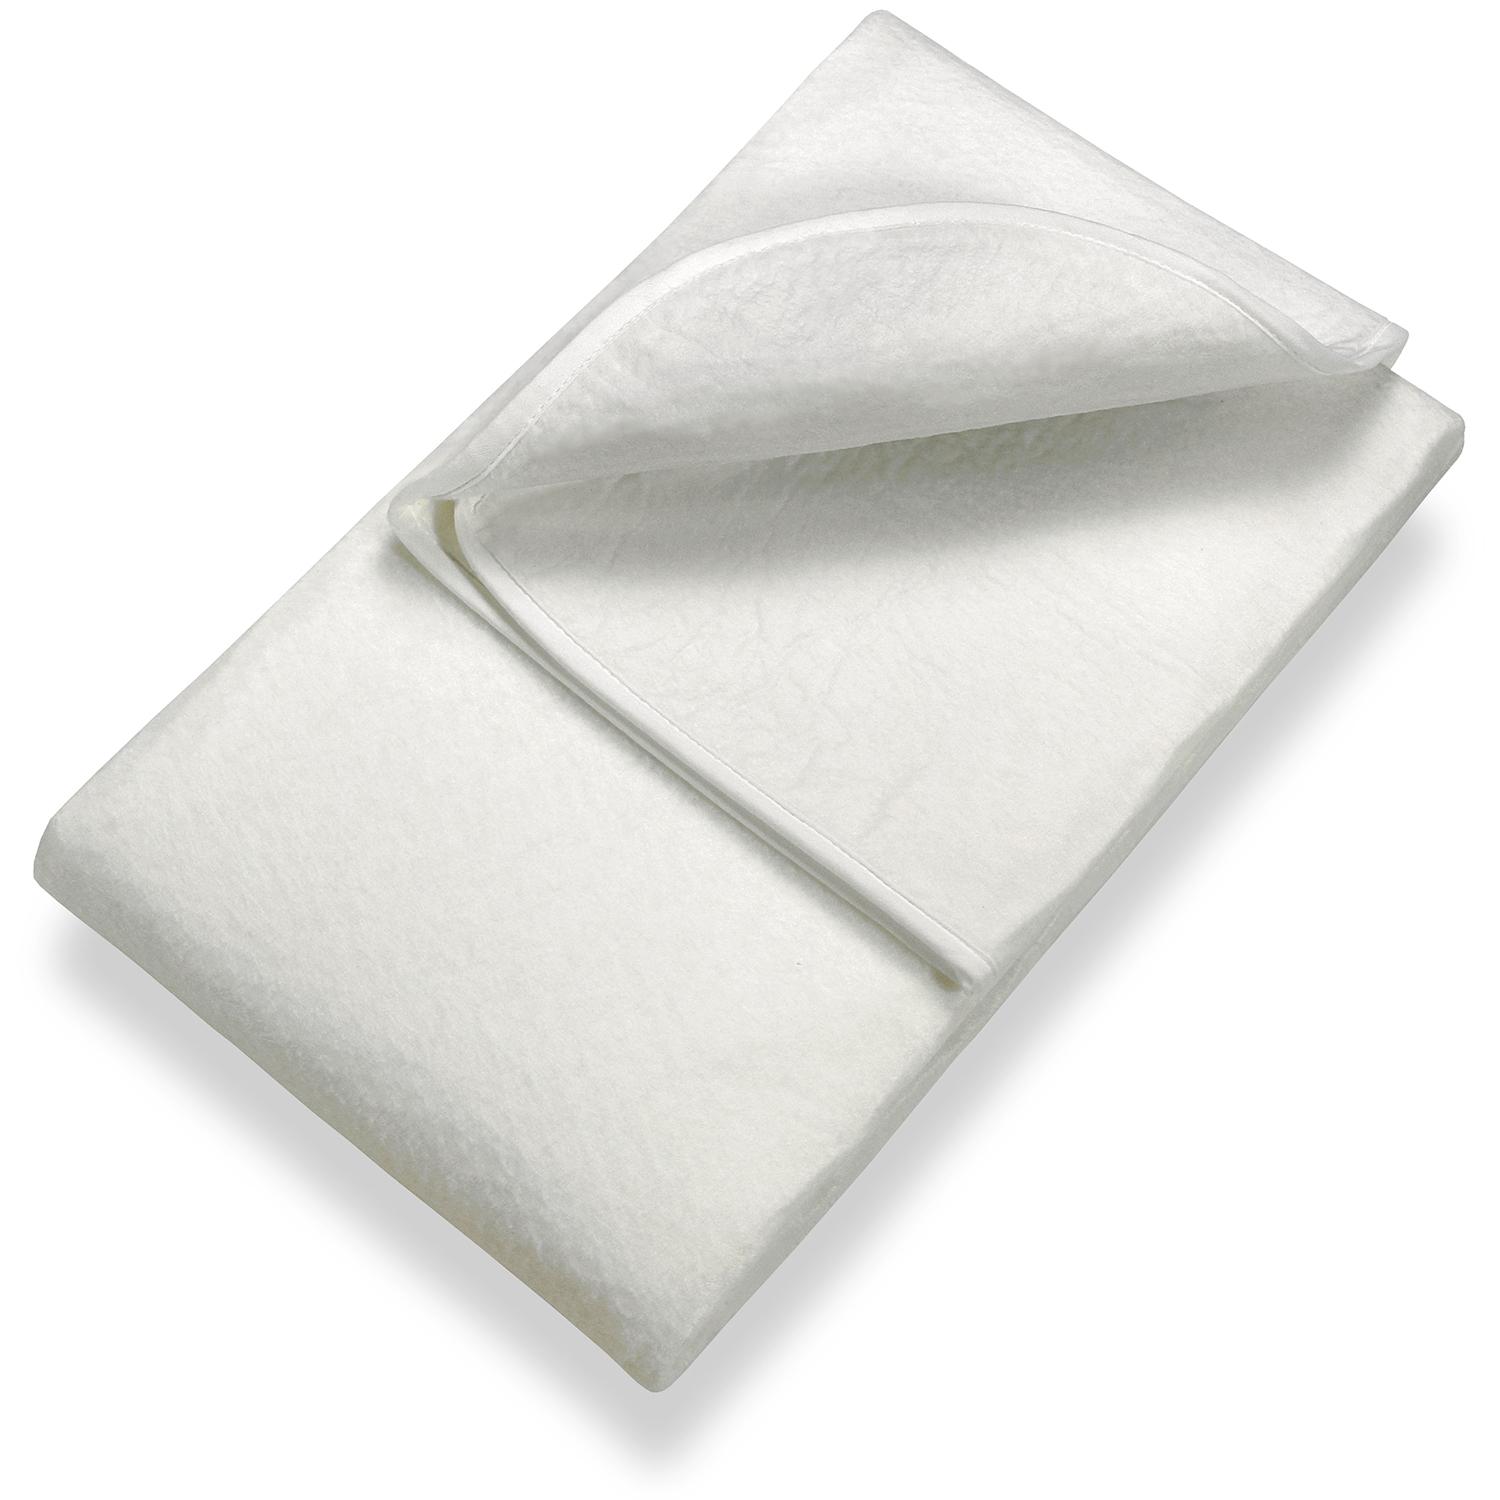 Sleezzz Basic colchão de feltro com agulha 120 x 200 cm, protetor de colchão para colocar na estrutura de ripas, branco